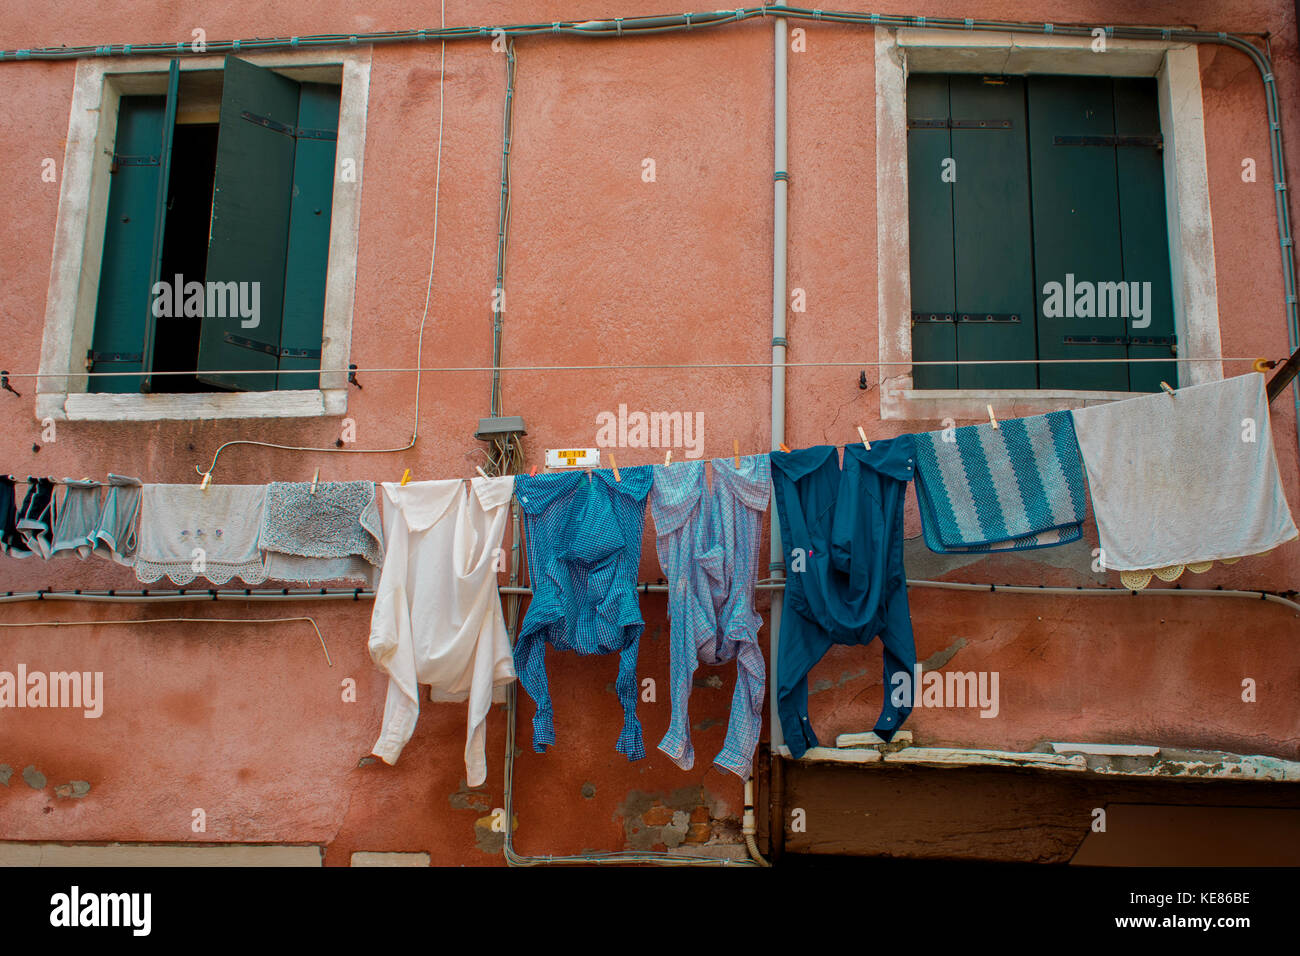 Wäsche trocknen auf die Wäscheleine vor dem Fenster Stockfotografie - Alamy